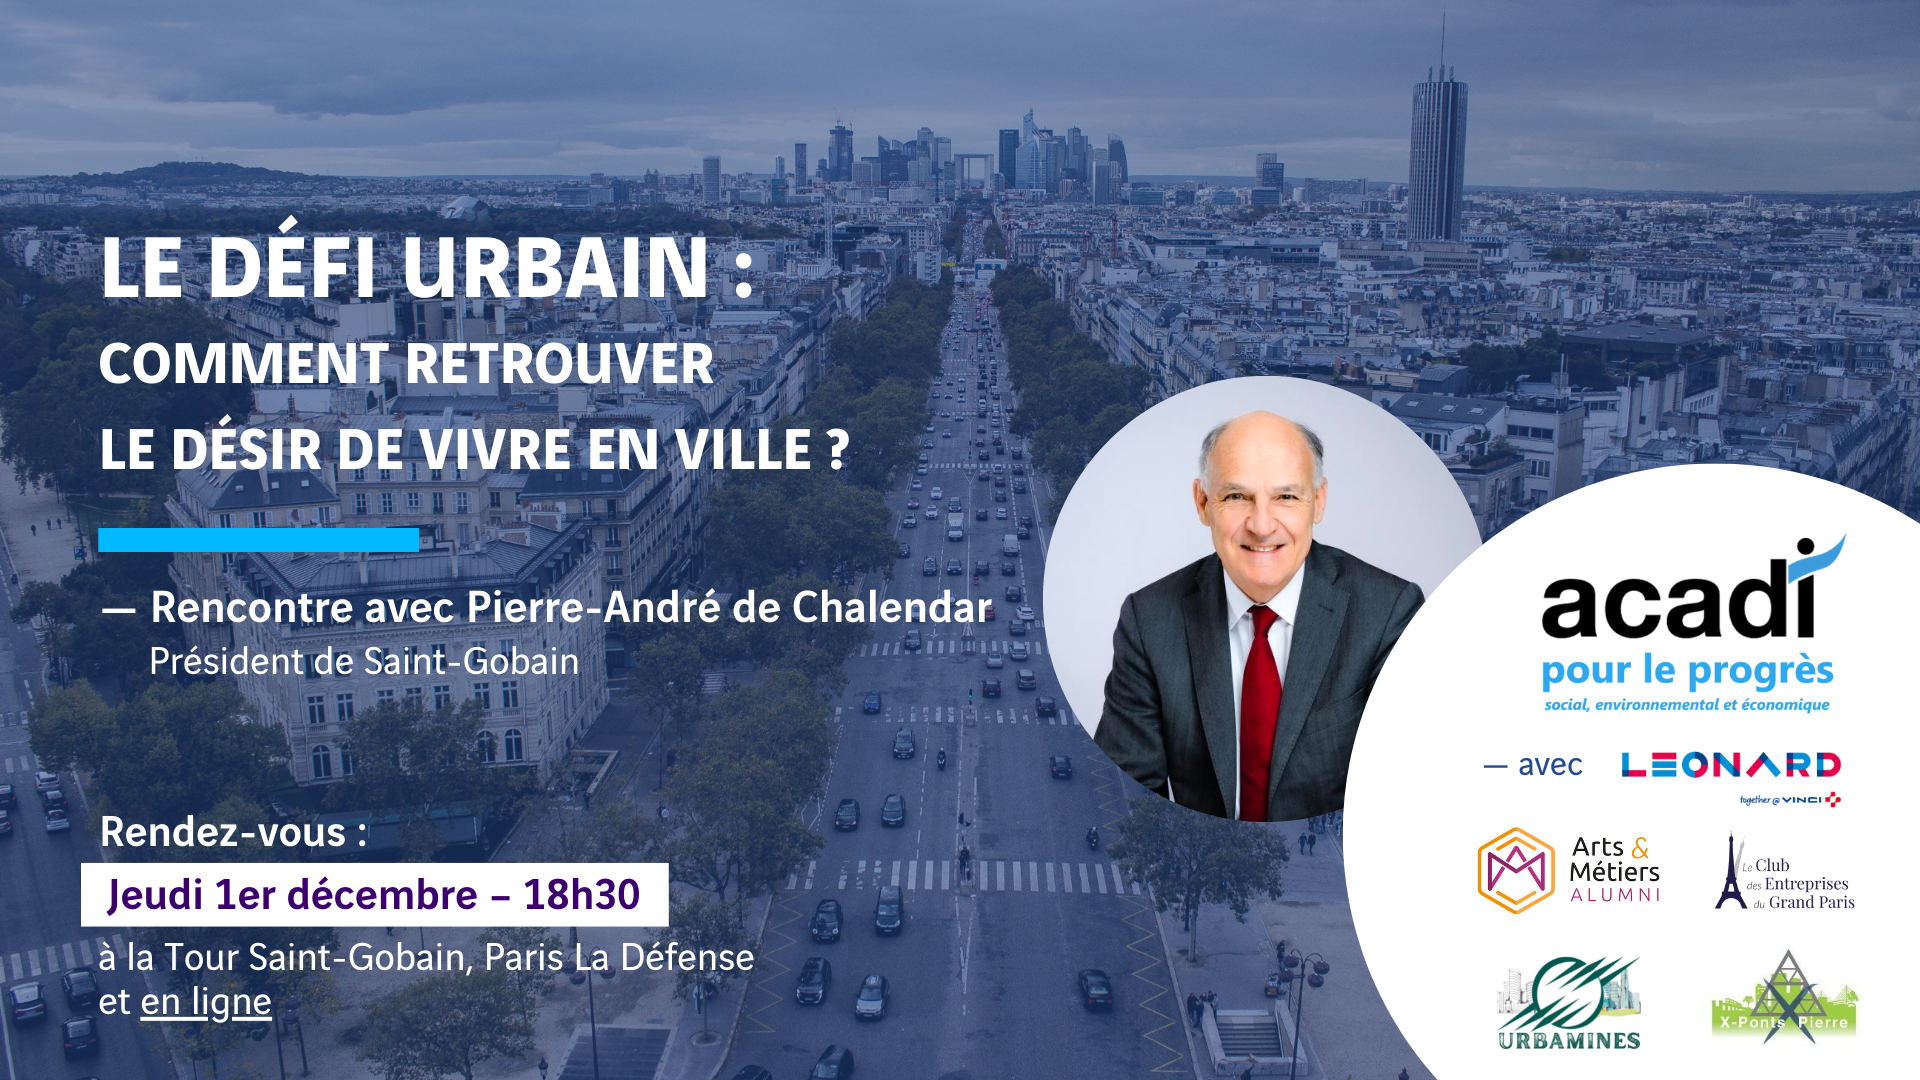 Image - « LE DEFI URBAIN - COMMENT RETROUVER LE DESIR DE VIVRE EN VILLE ? » - Rencontre avec Pierre-André de Chalendar, Président de Saint-Gobain